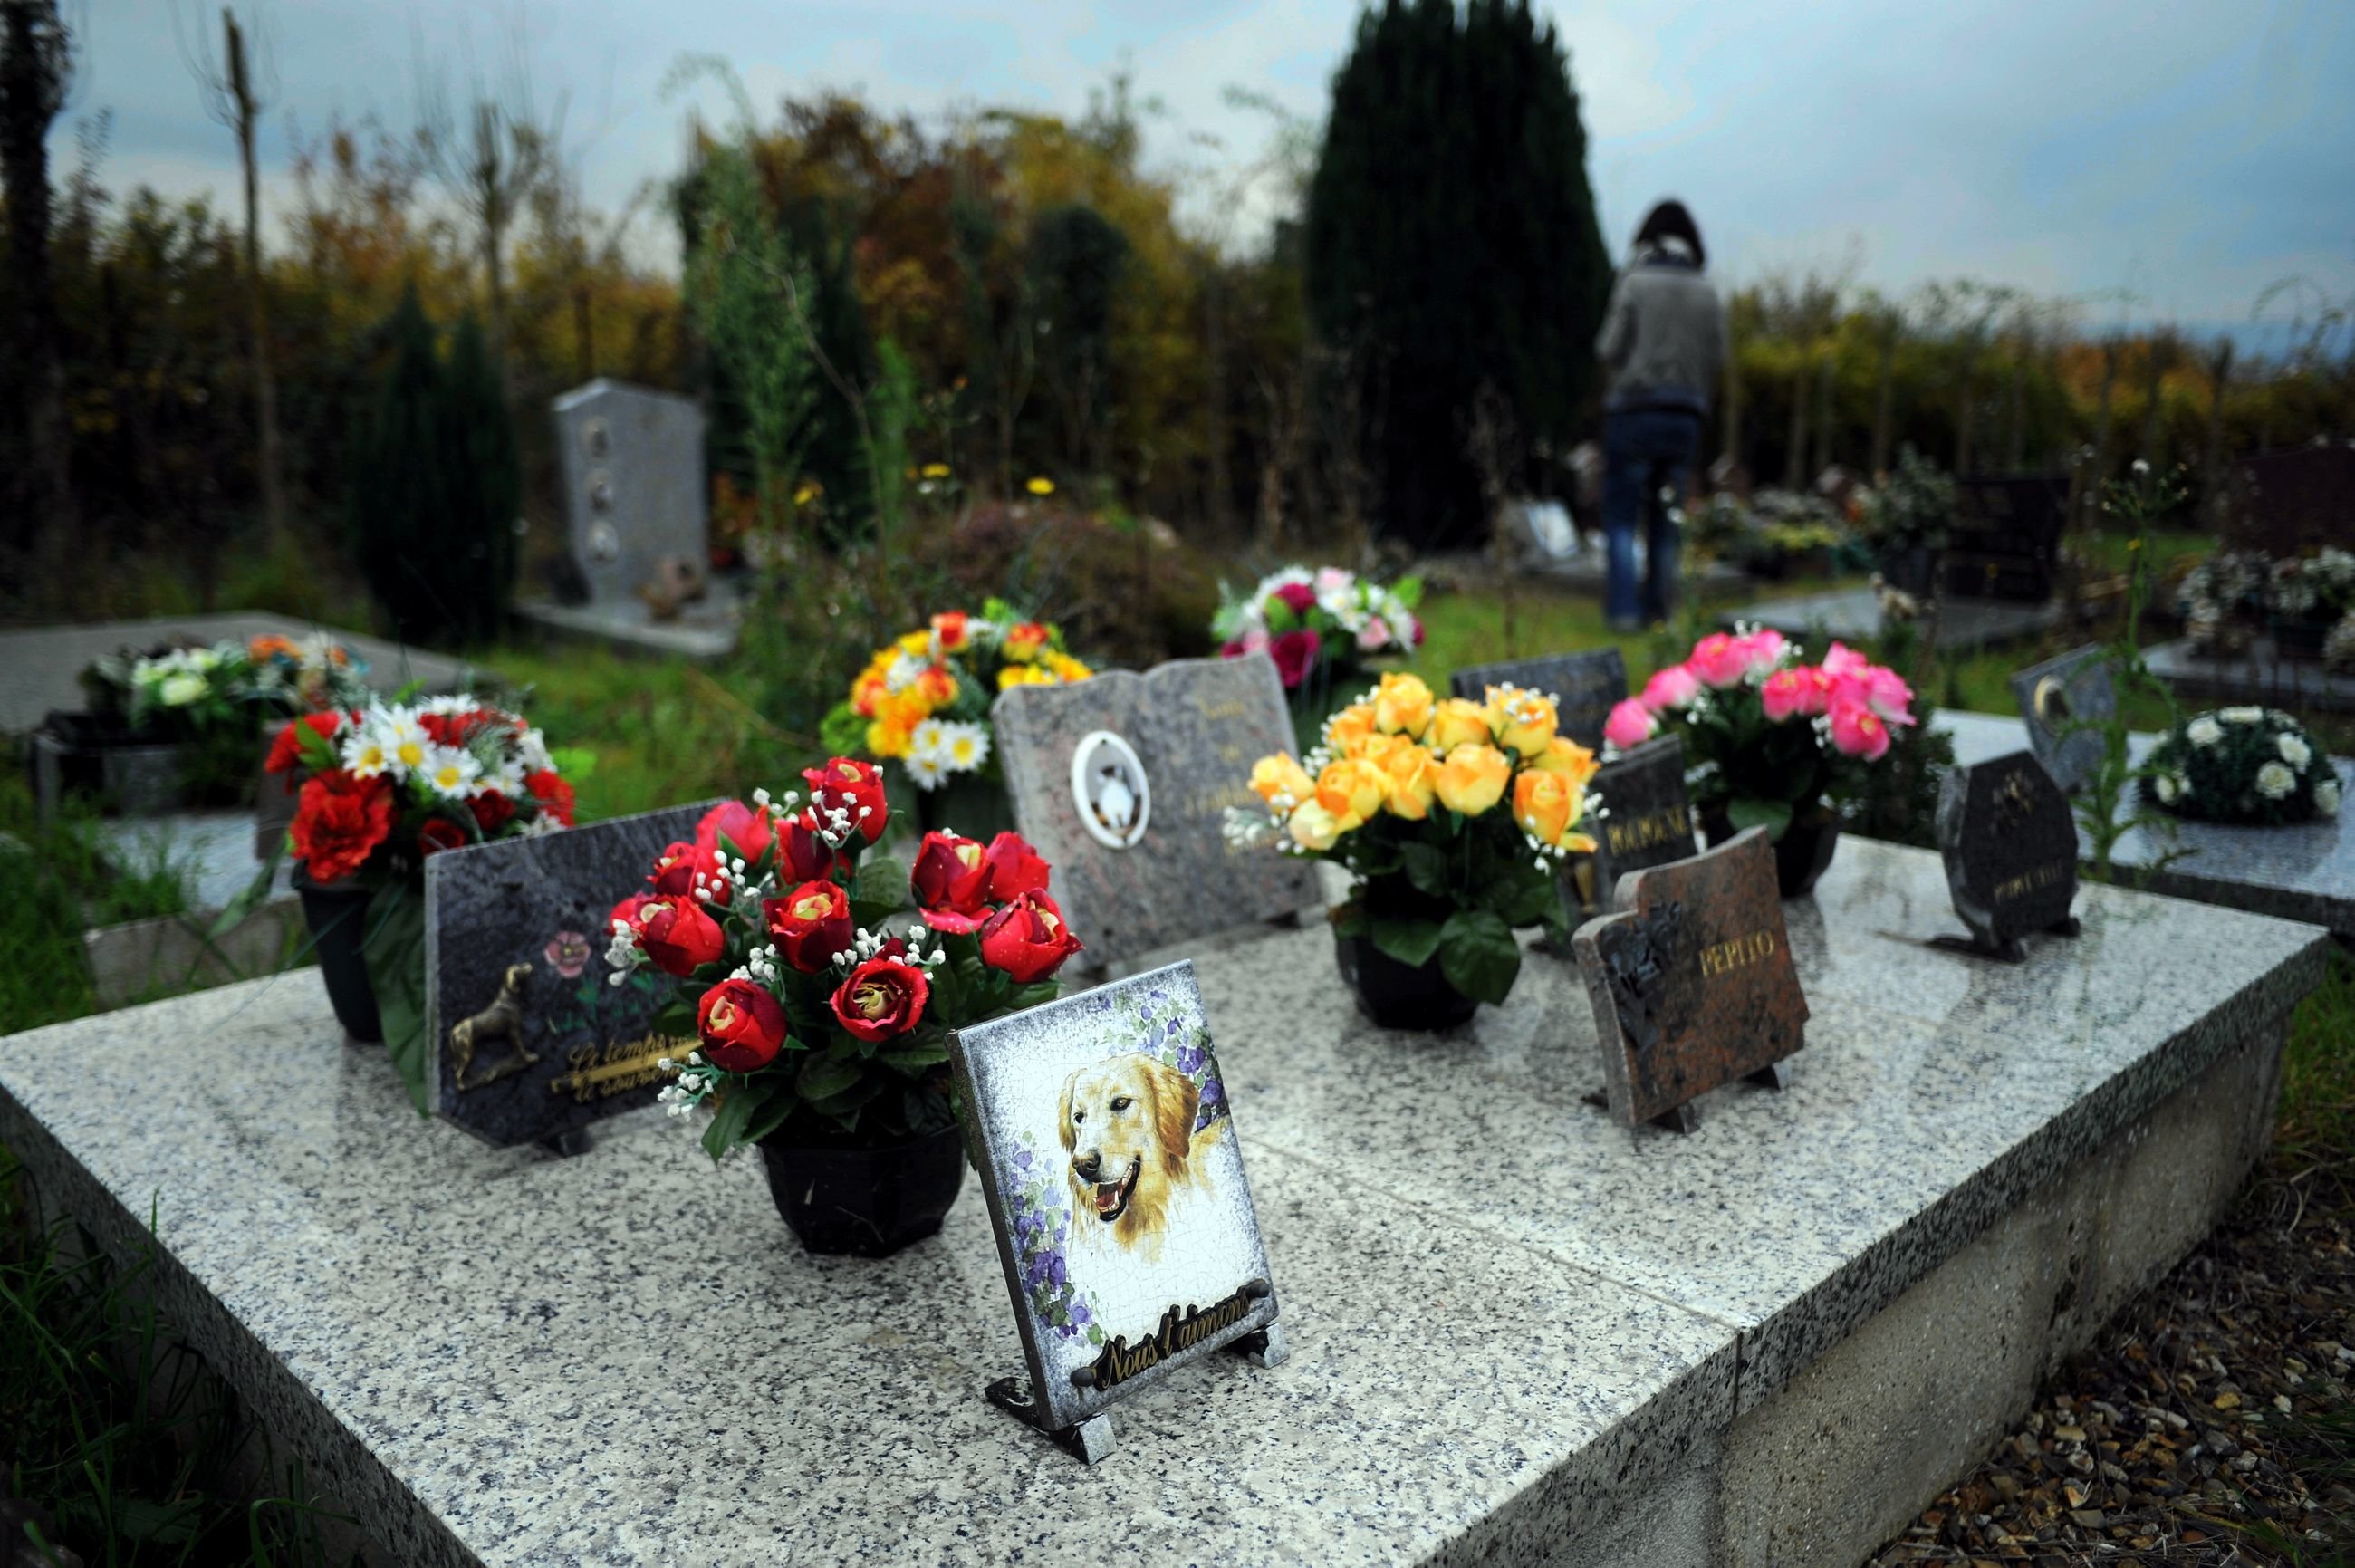 Les cimetières pour animaux, comme celui de Saint-Leu-d'Esserent dans l'Oise (notre photo), sont rares en France. Le département des Yvelines attend toujours la création d'un site dédié sur son territoire. LP/Hervé Sénamaud